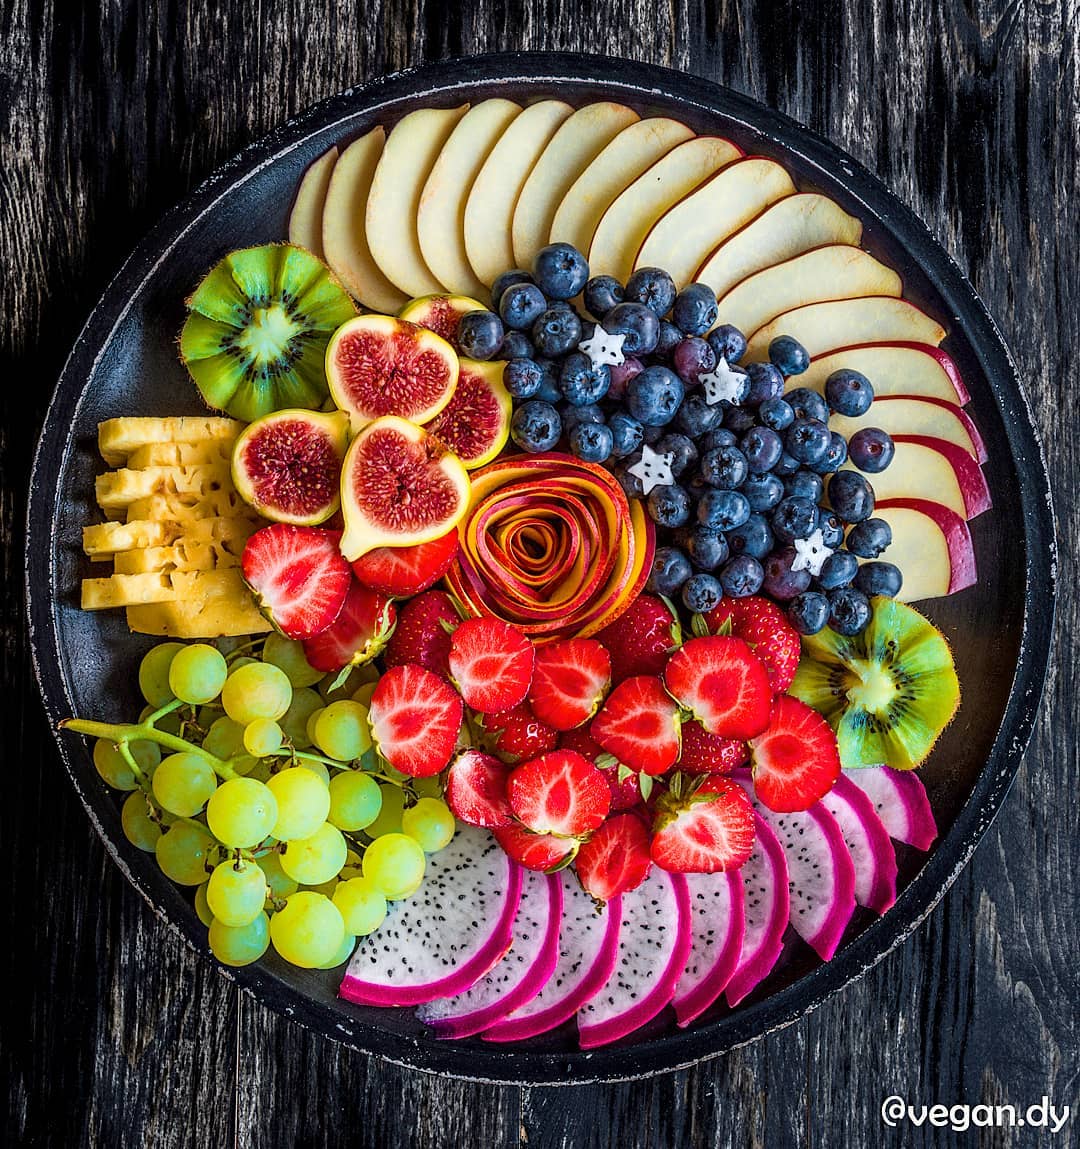 Красочные и аппетитные снимки веганской еды от Энди